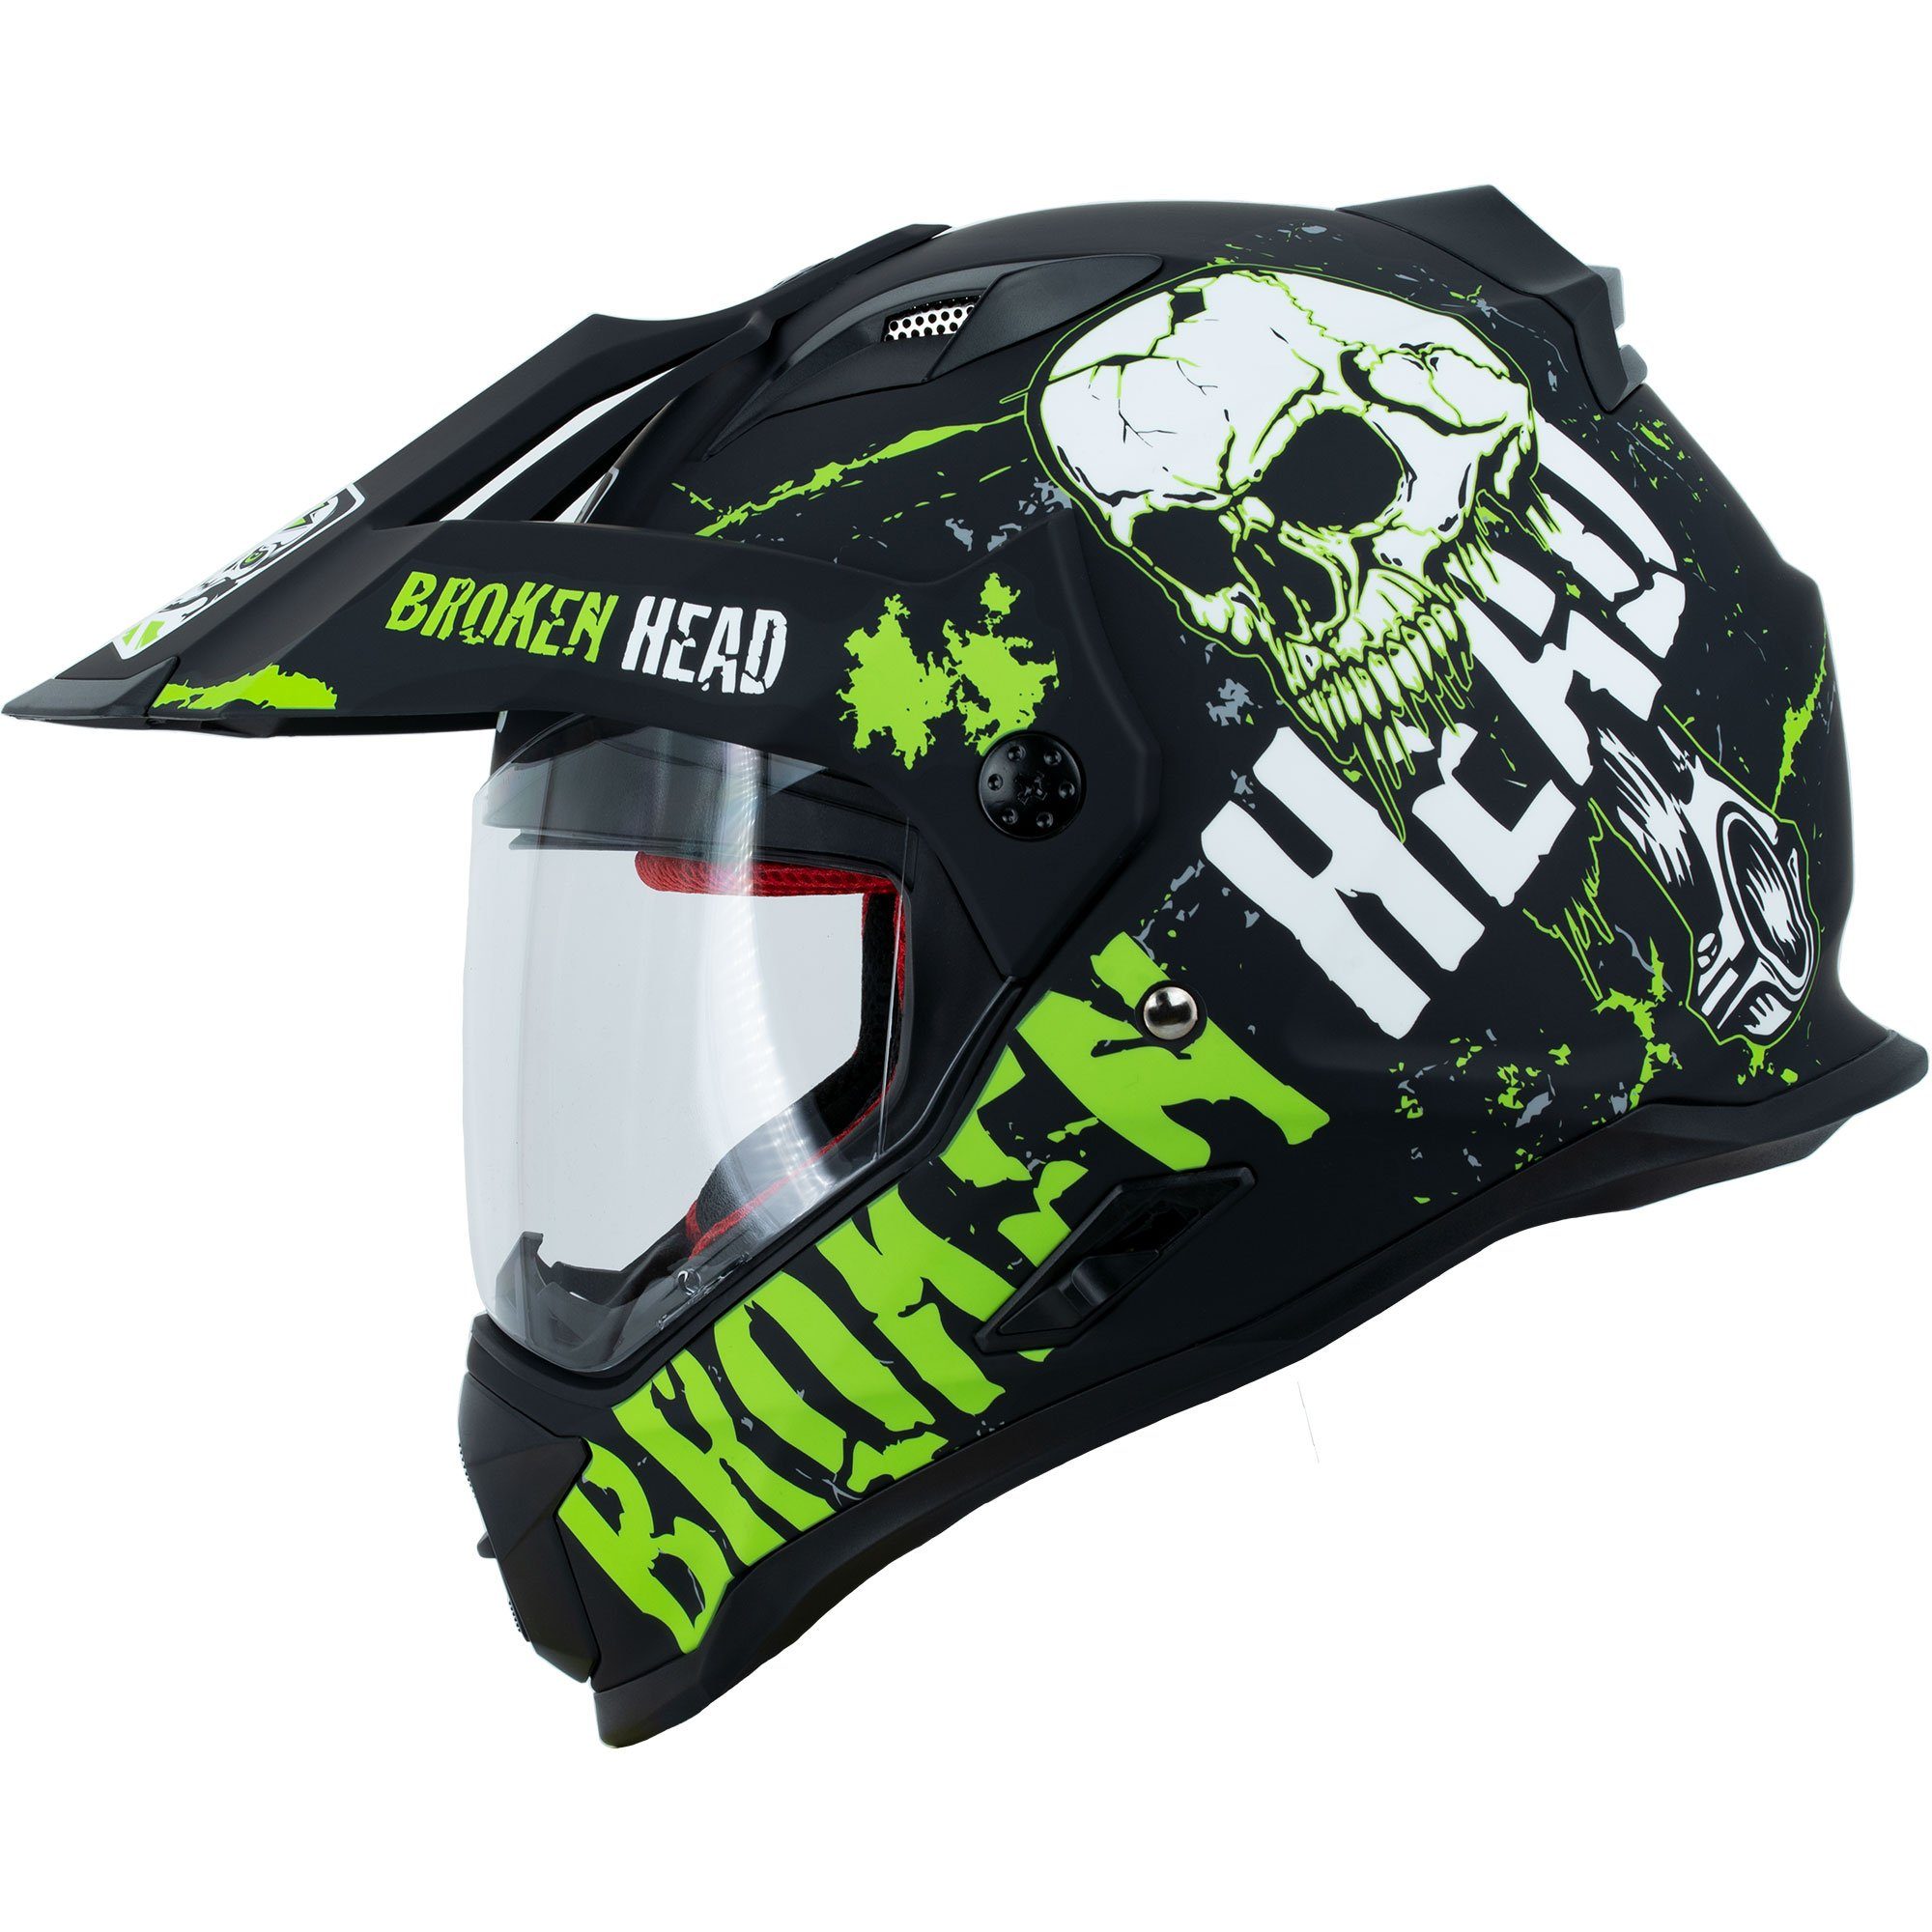 Broken Head Motorradhelm »Bone Crusher grün Enduro«, inkl. Sonnenblende  online kaufen | OTTO